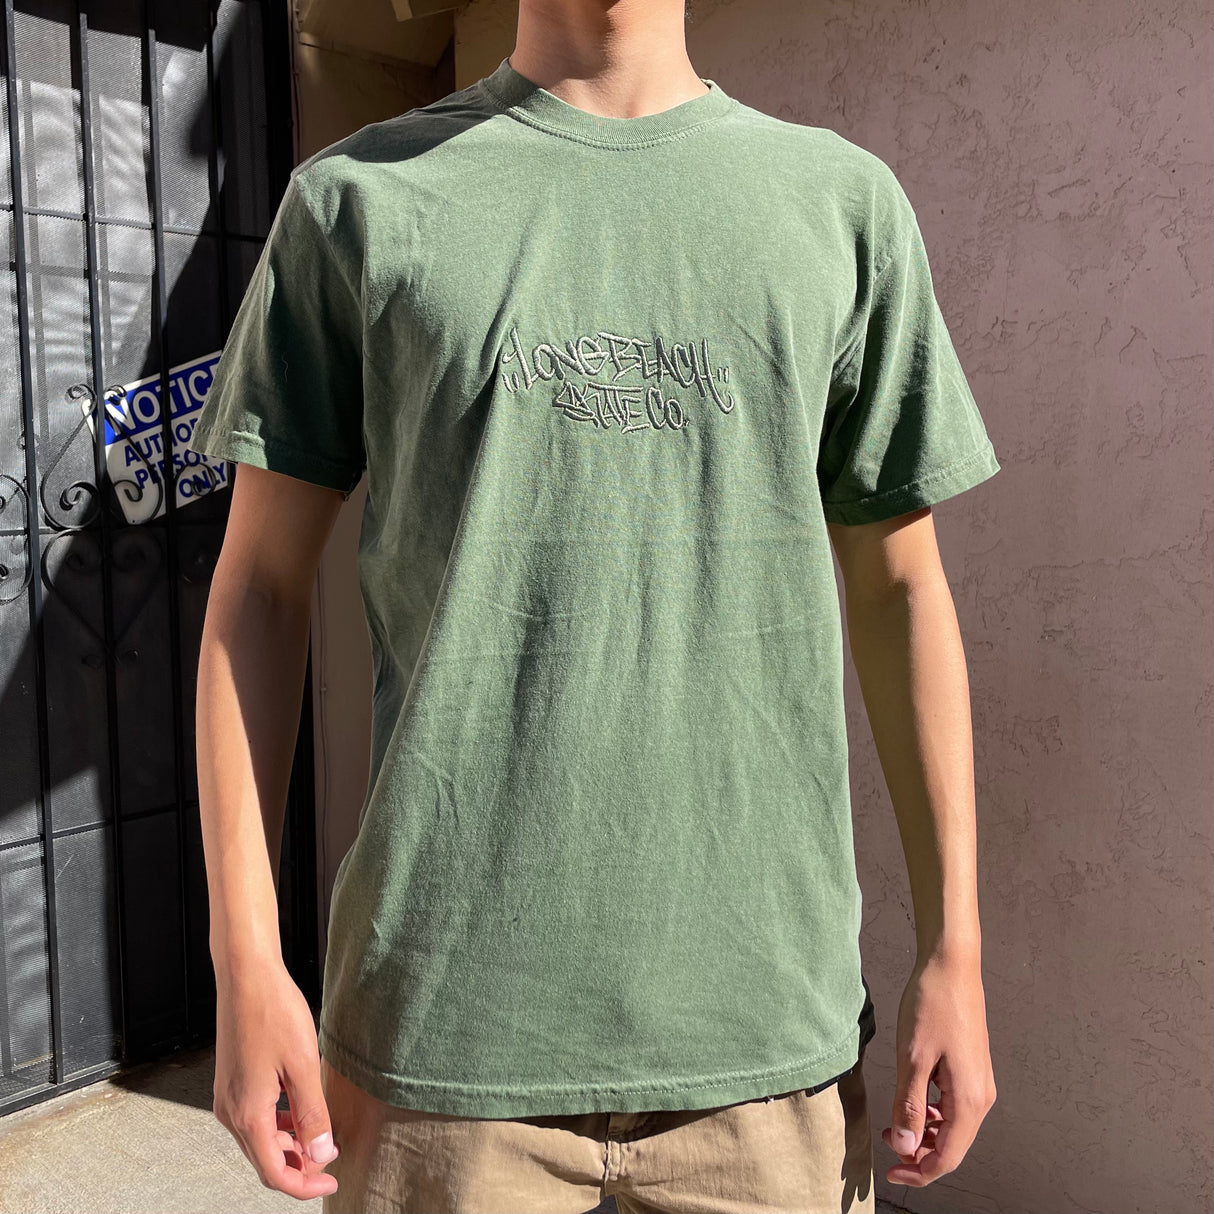 Long Beach Skate Co. Graffiti Signature Hemp Green S/s Shirt